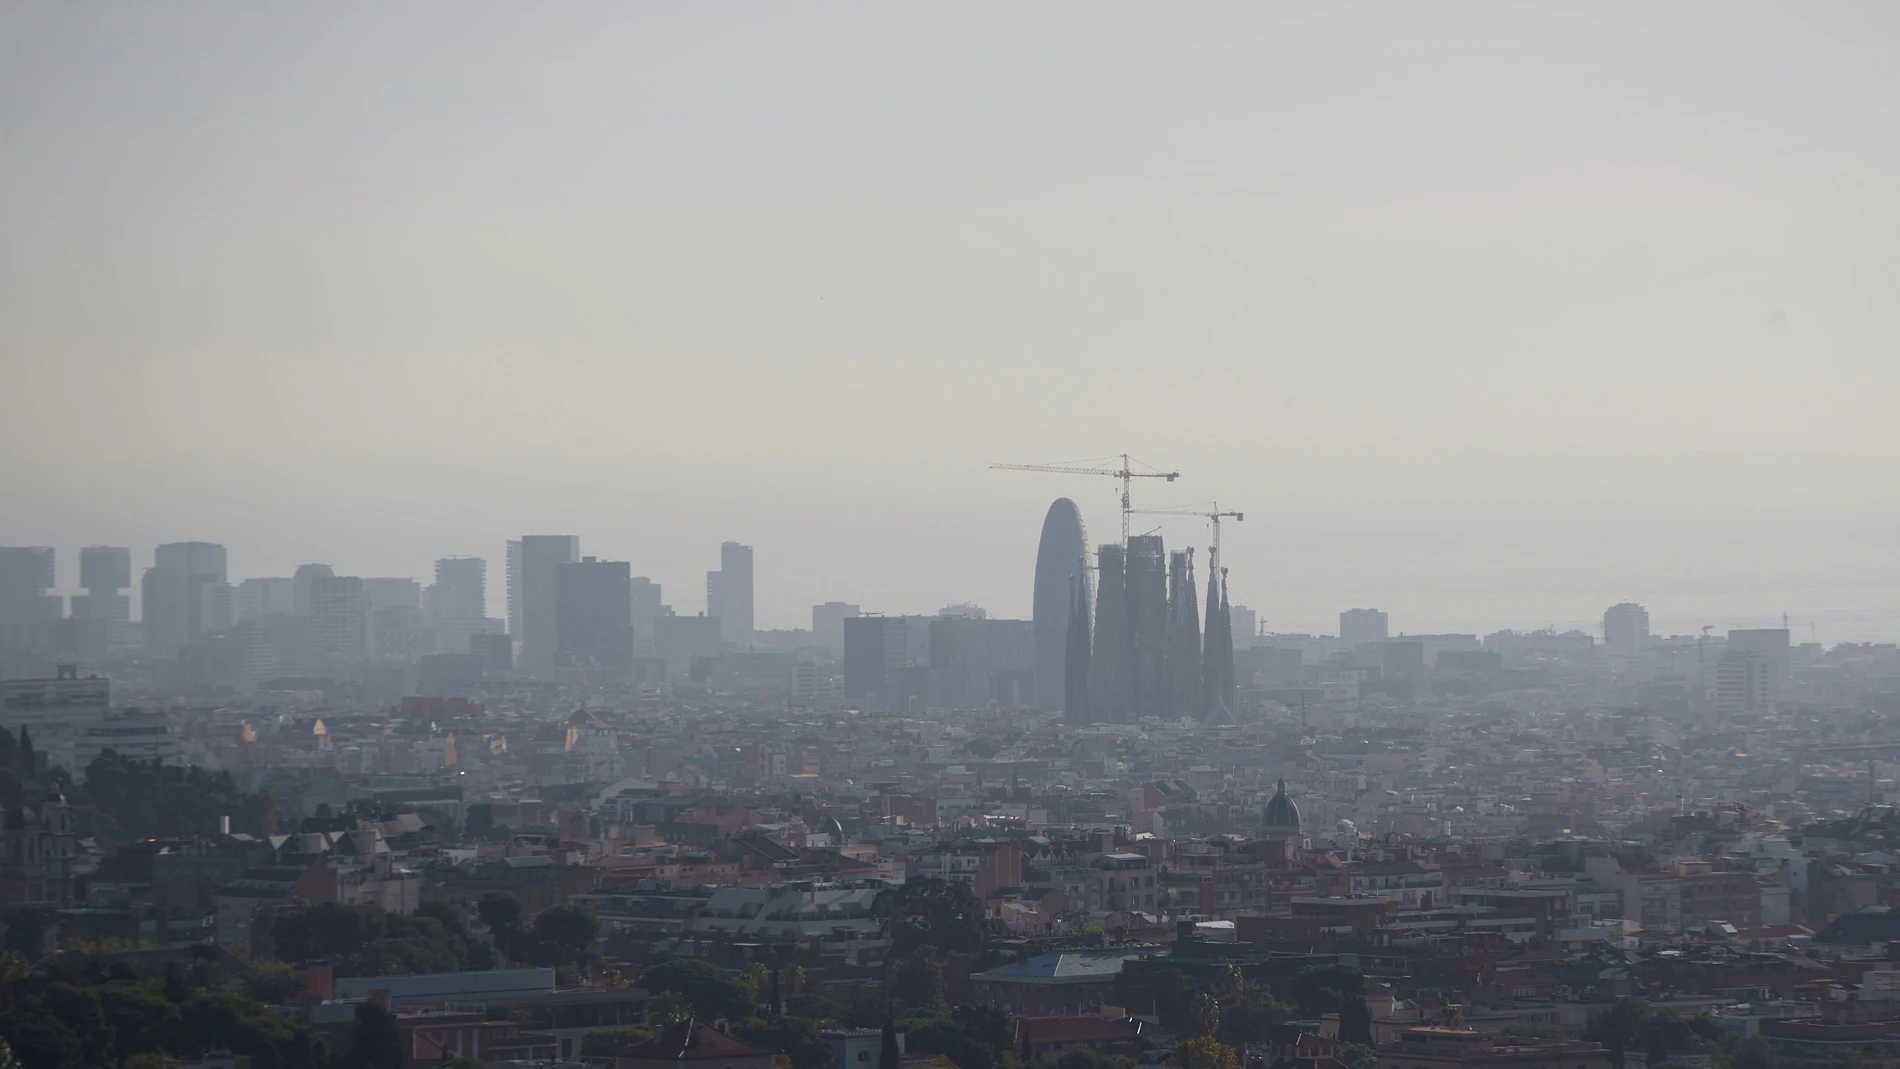  Contaminación en la ciudad de Barcelona